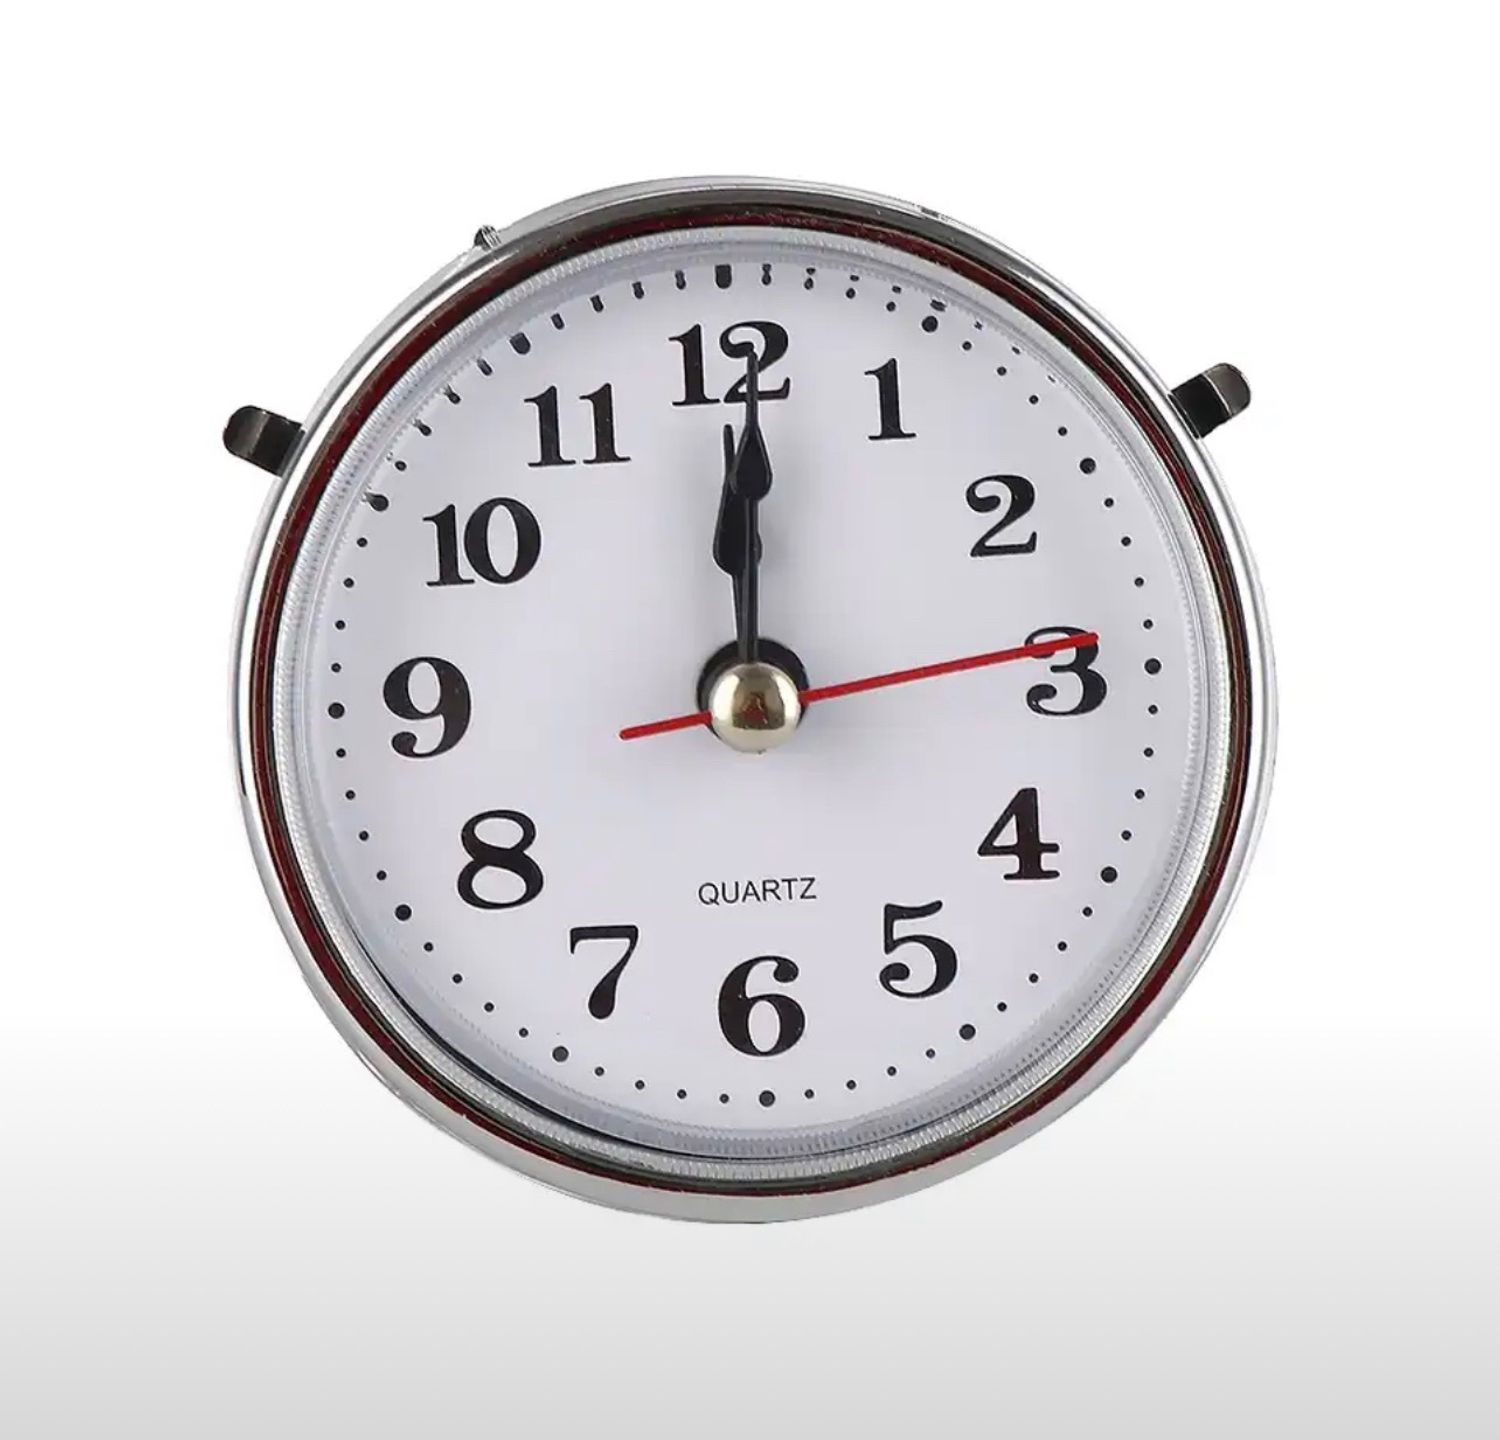 Часы кварцевые с циферблатом, вставка с арабскими цифрами, с белой лицевой серебро отделкой,65мм